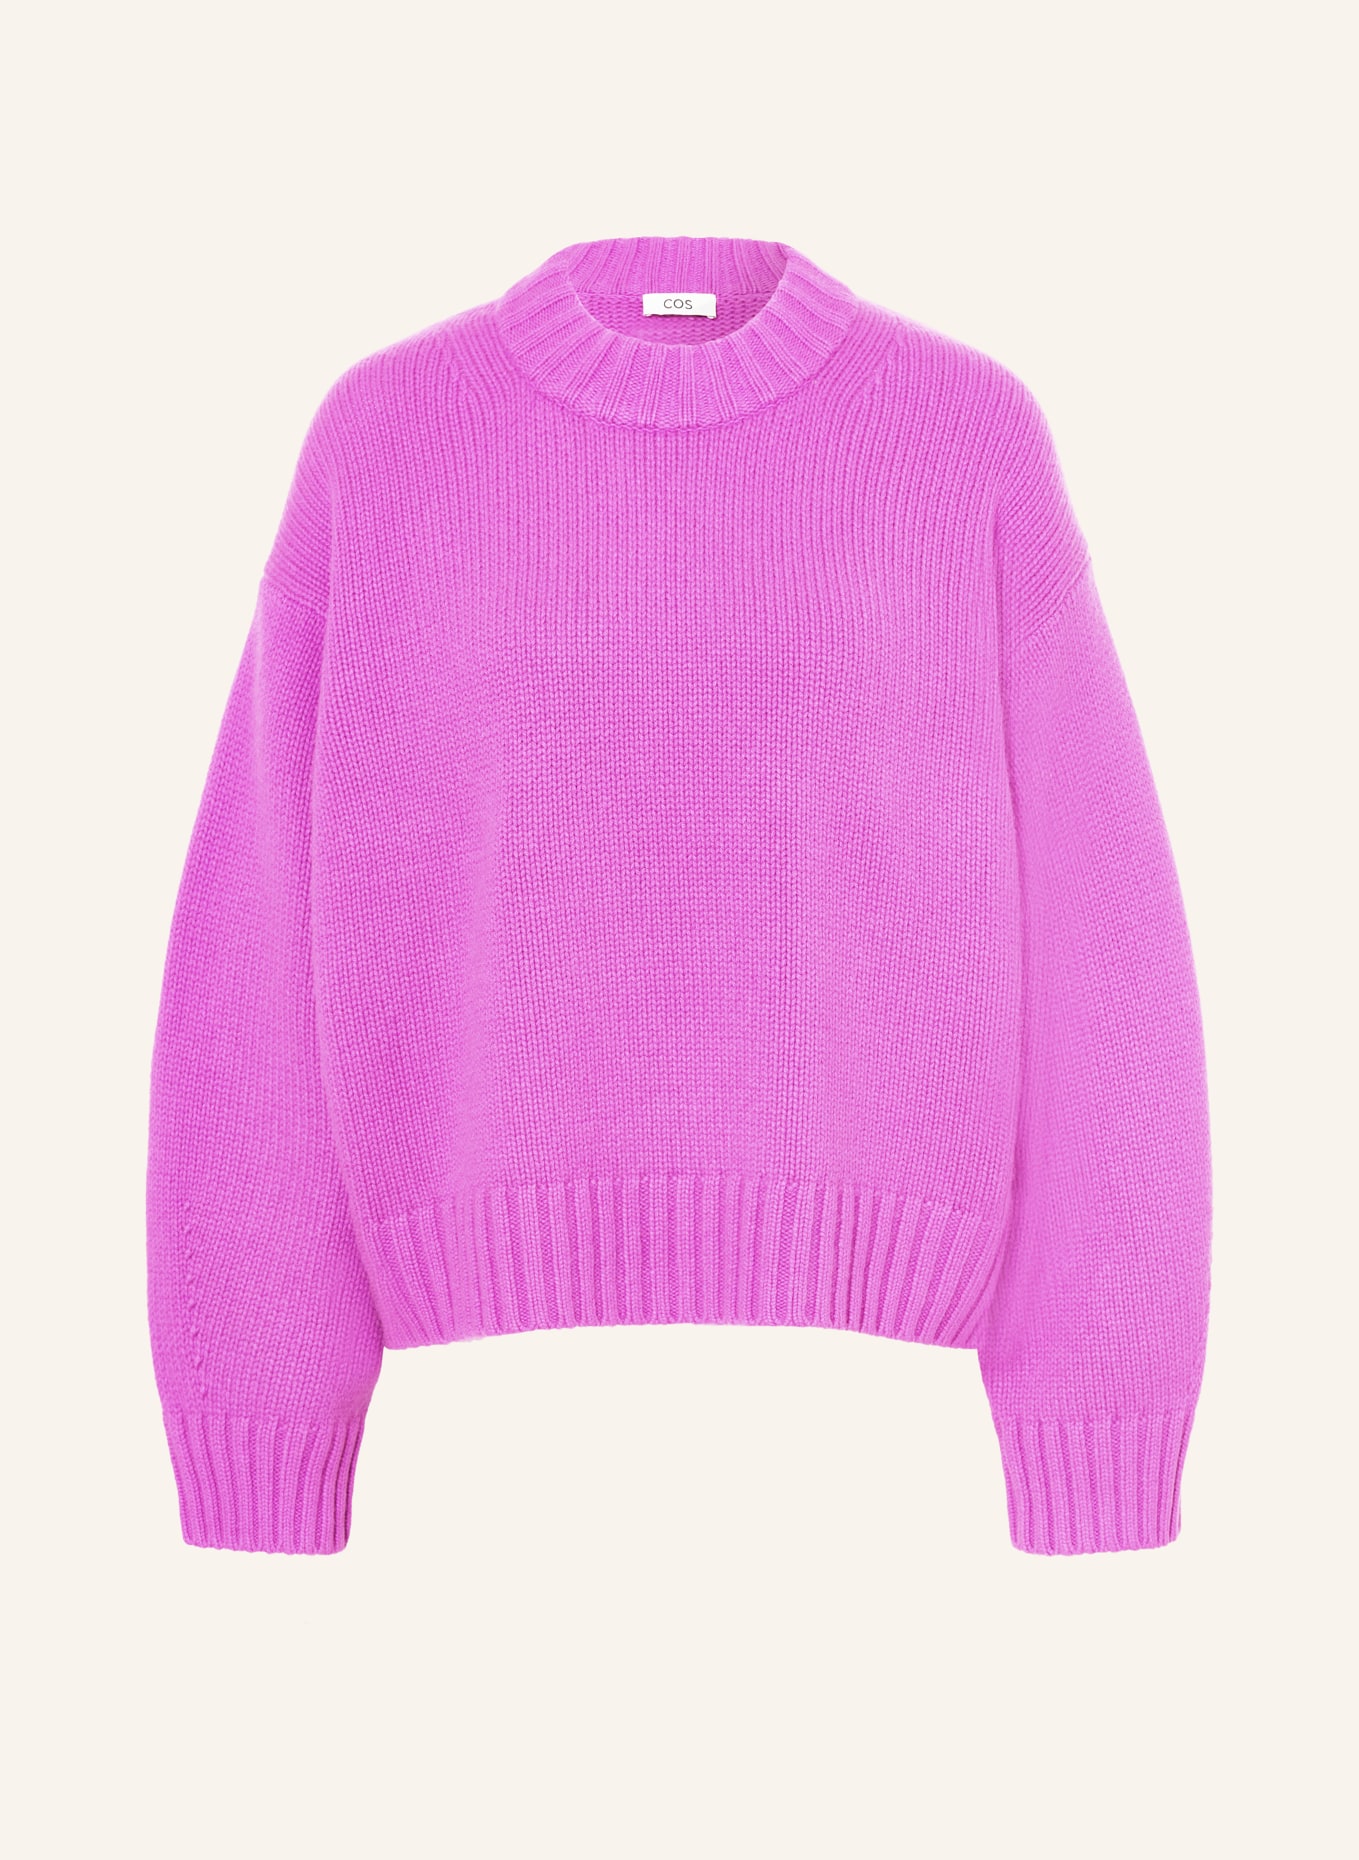 COS Cashmere-Pullover, Farbe: FUCHSIA (Bild 1)